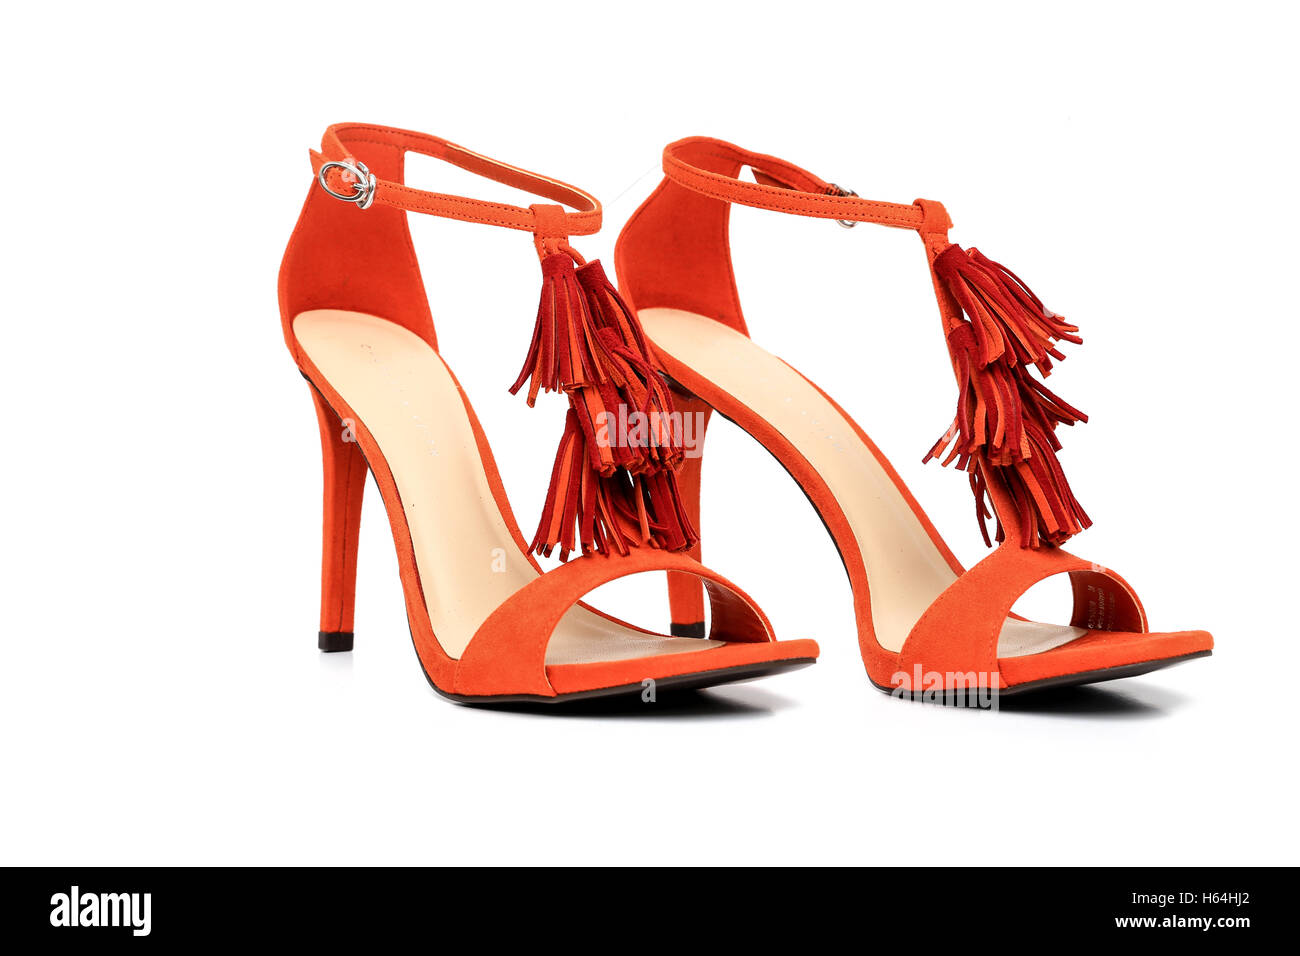 Chaussures femmes talon haut - Couleur Orange Photo Stock - Alamy